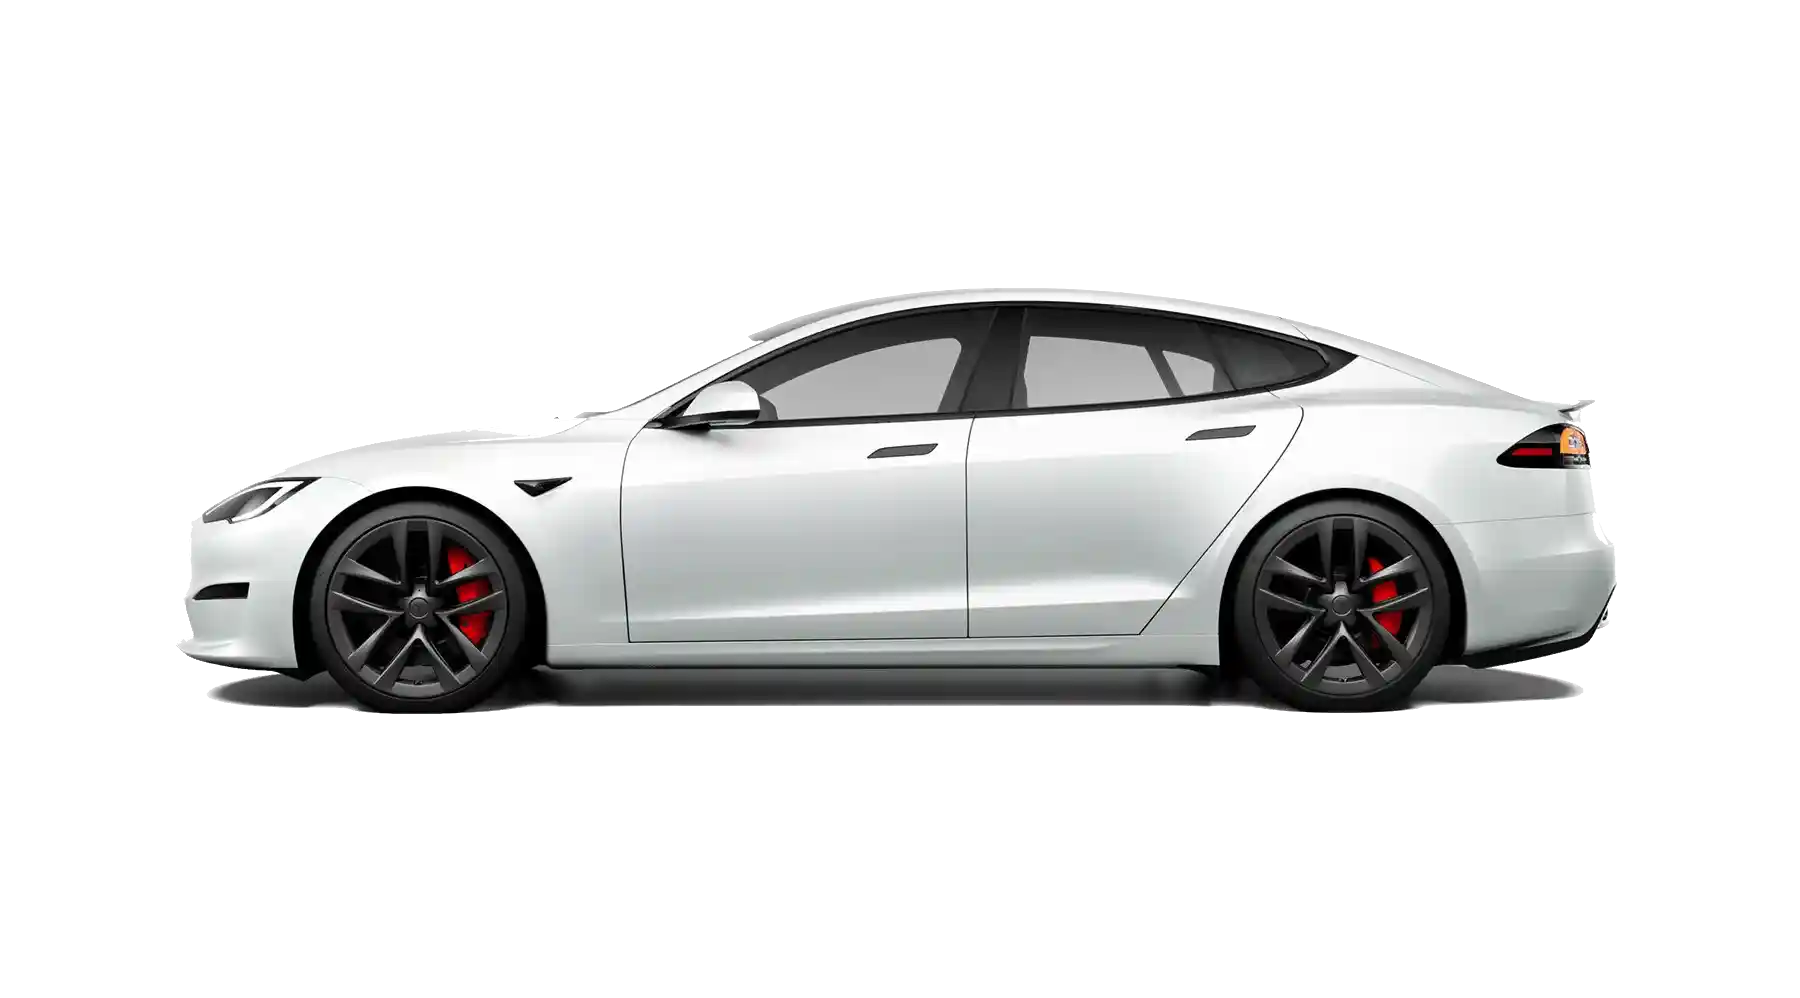 Model-S Tesla